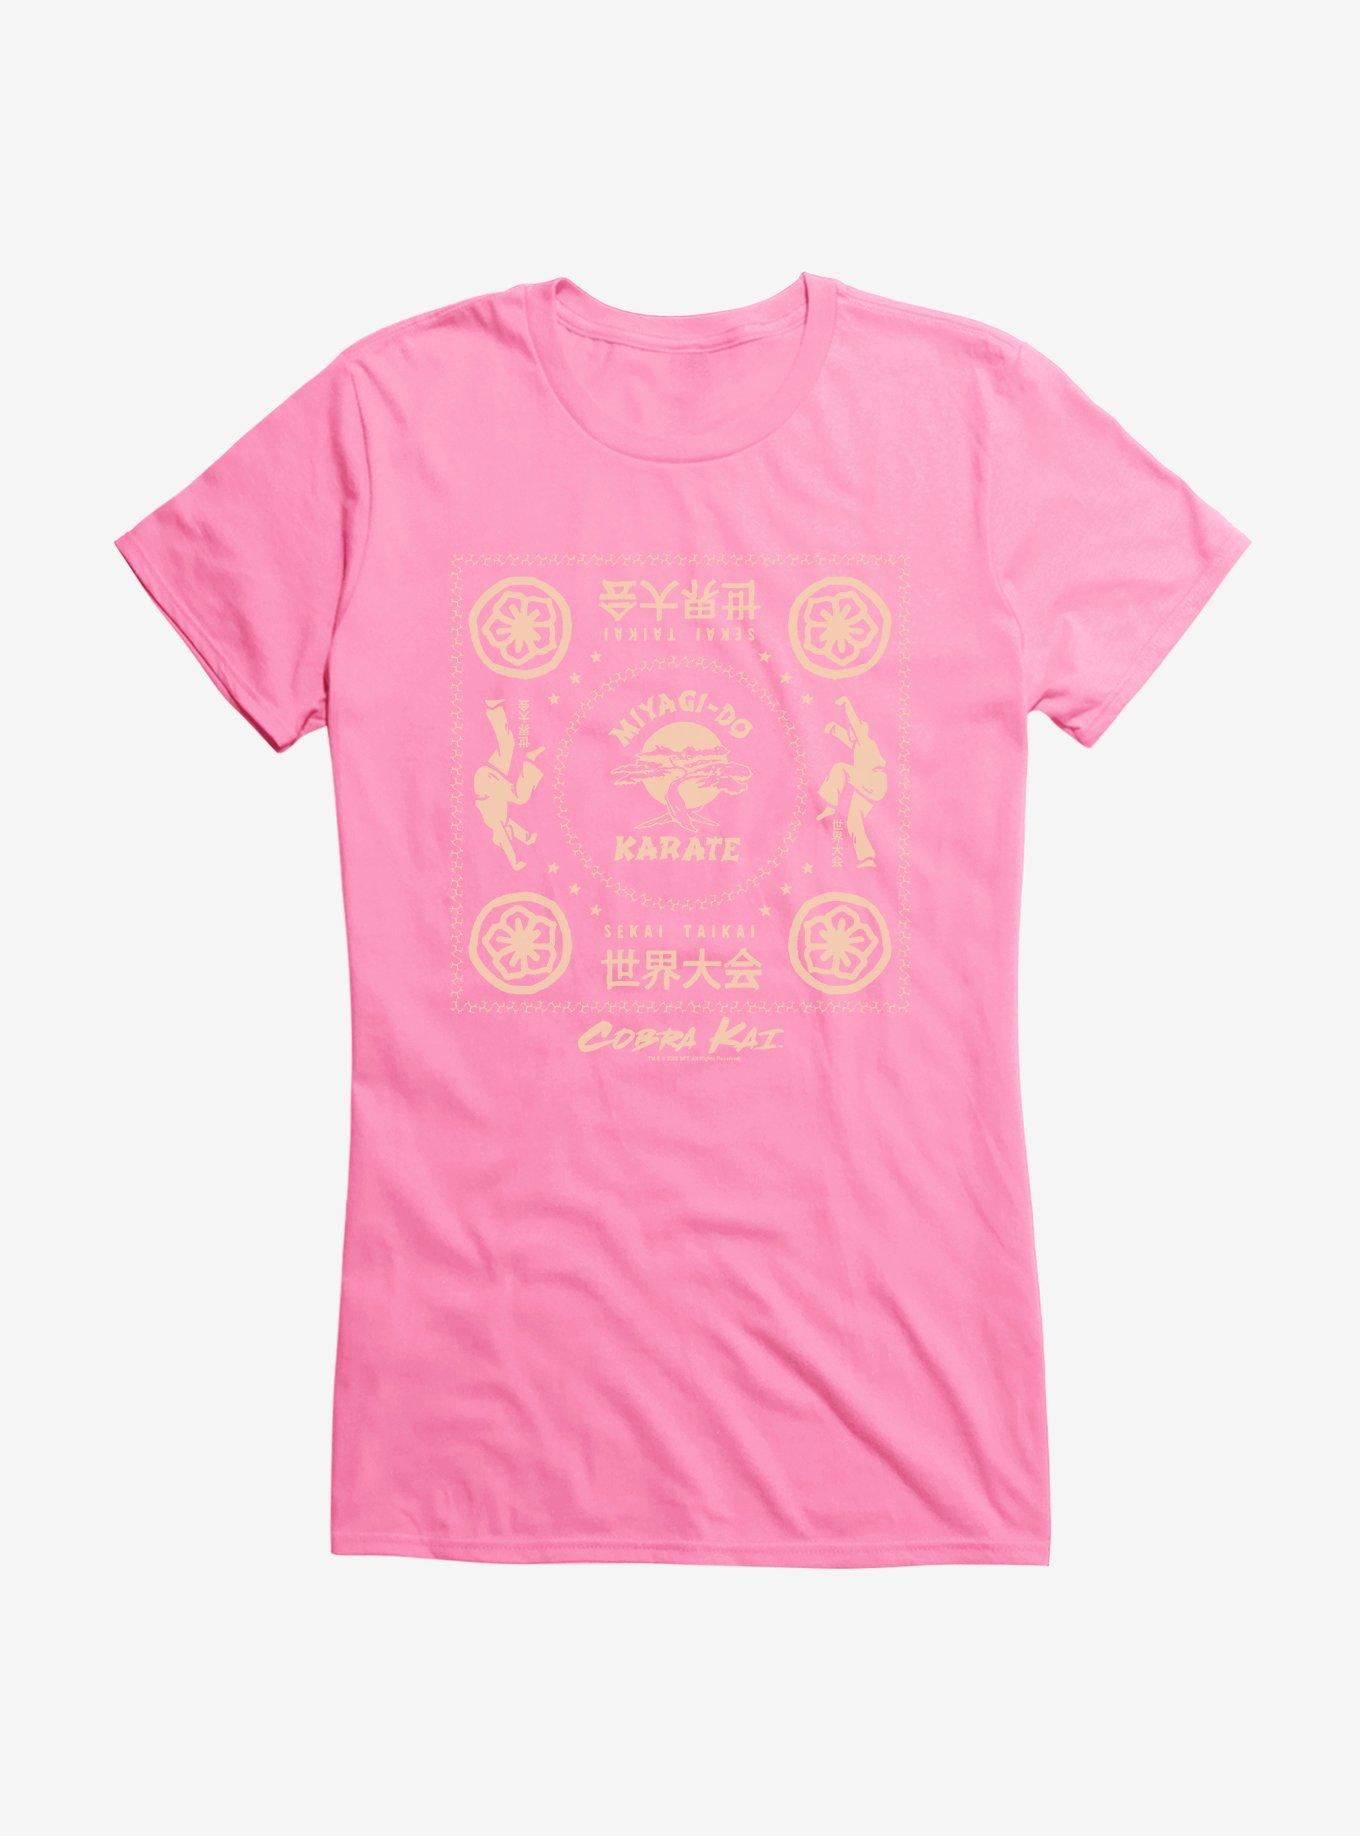 Cobra Kai Miyagi-Do Karate Sekai Taikai Girls T-Shirt, , hi-res